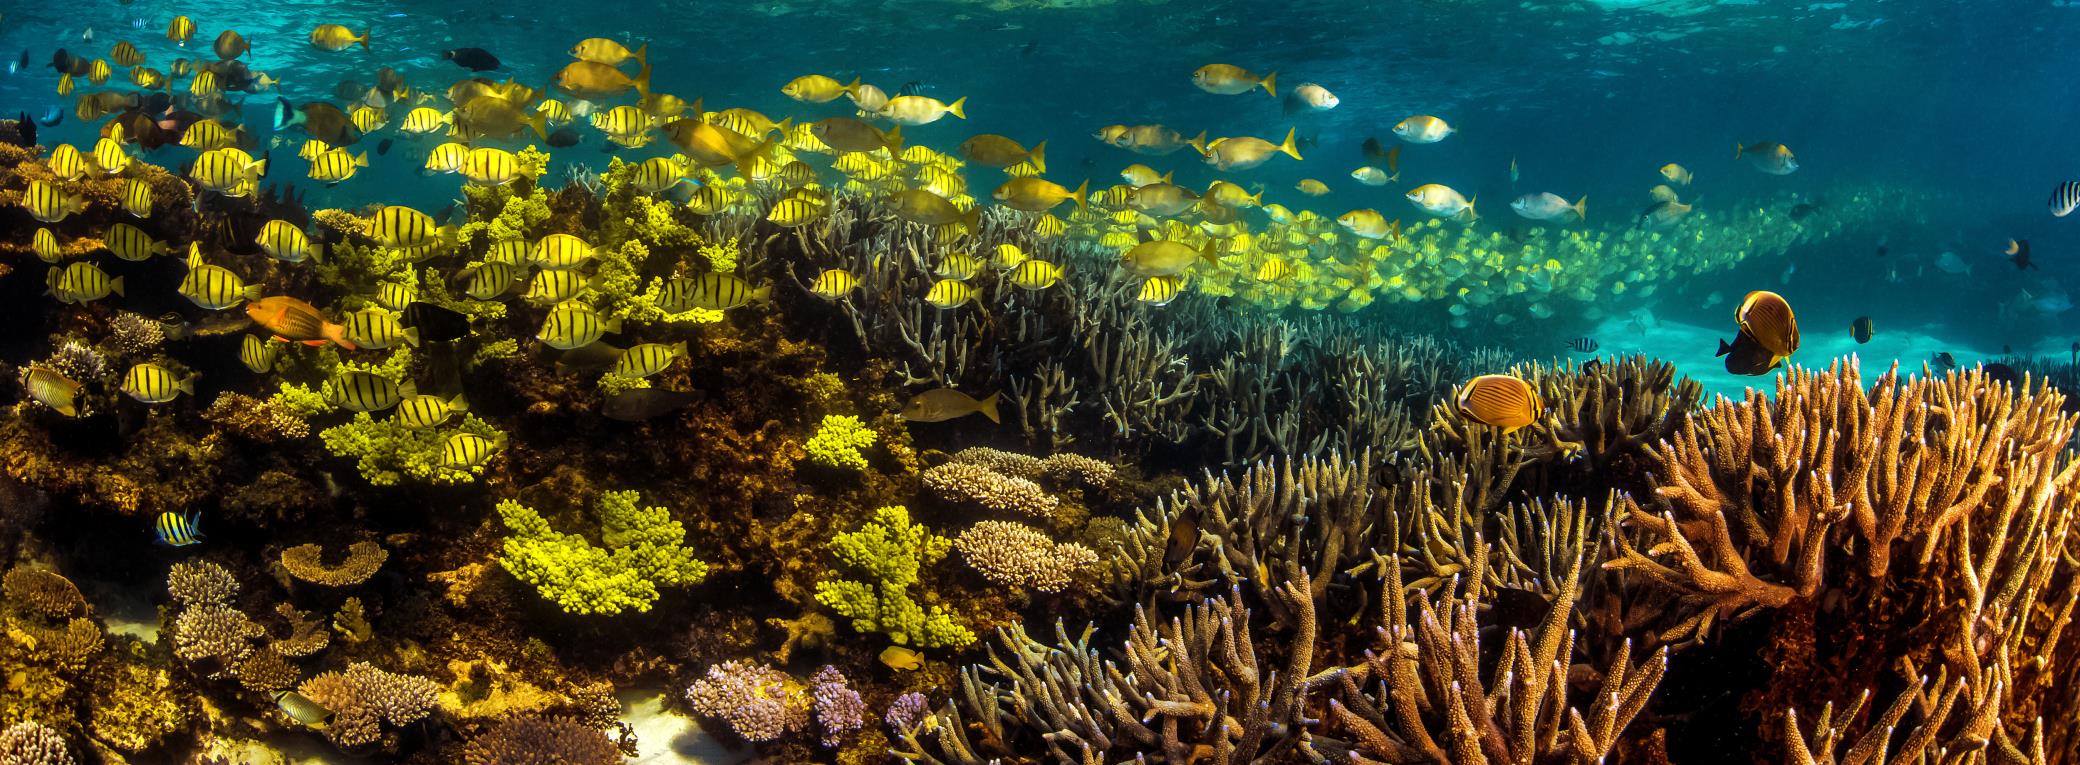 Rcif corallien pour le snorkeling